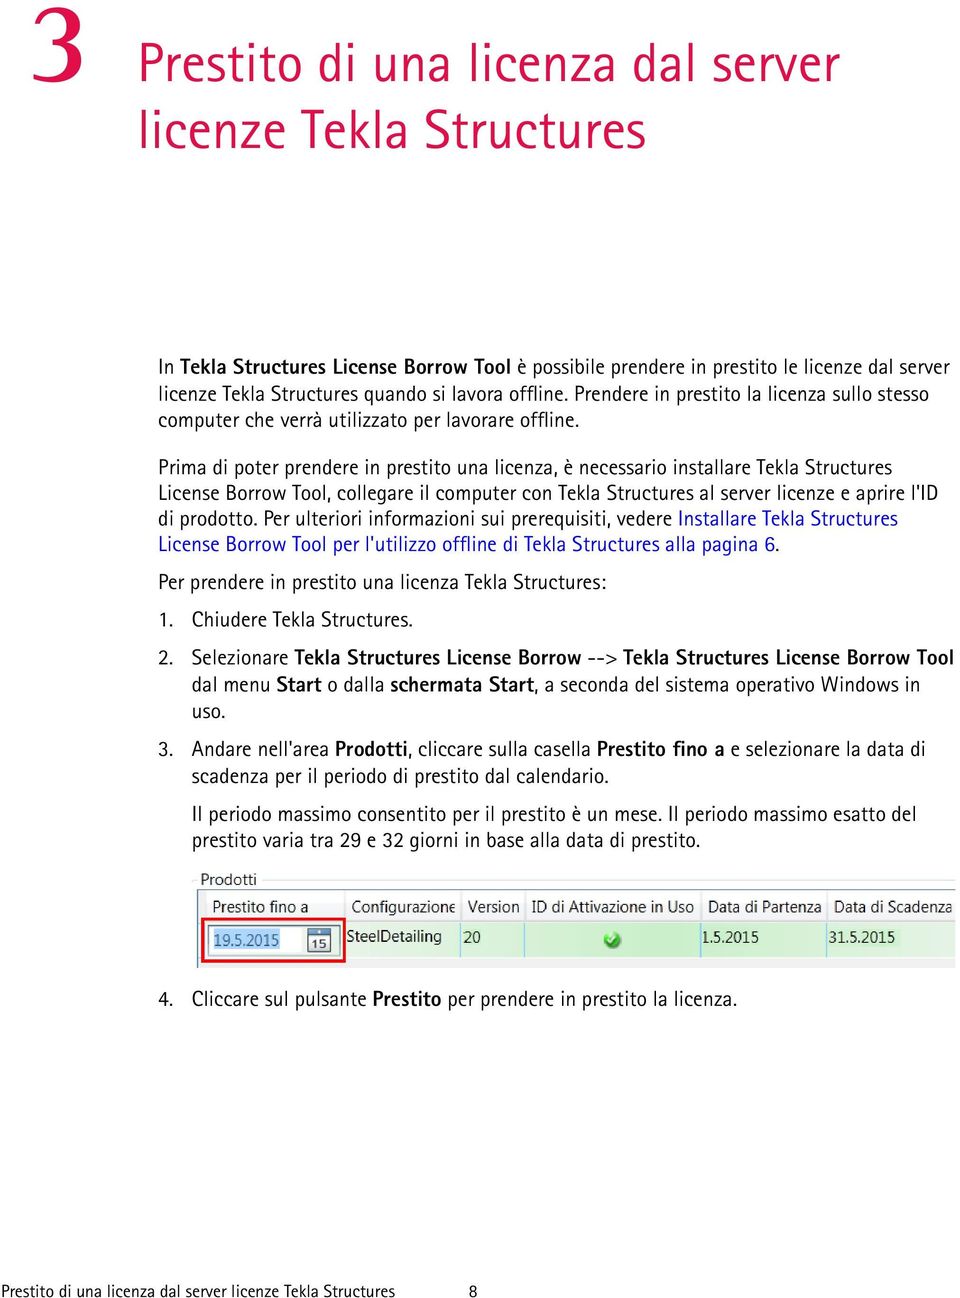 Prima di poter prendere in prestito una licenza, è necessario installare Tekla Structures License Borrow Tool, collegare il computer con Tekla Structures al server licenze e aprire l'id di prodotto.